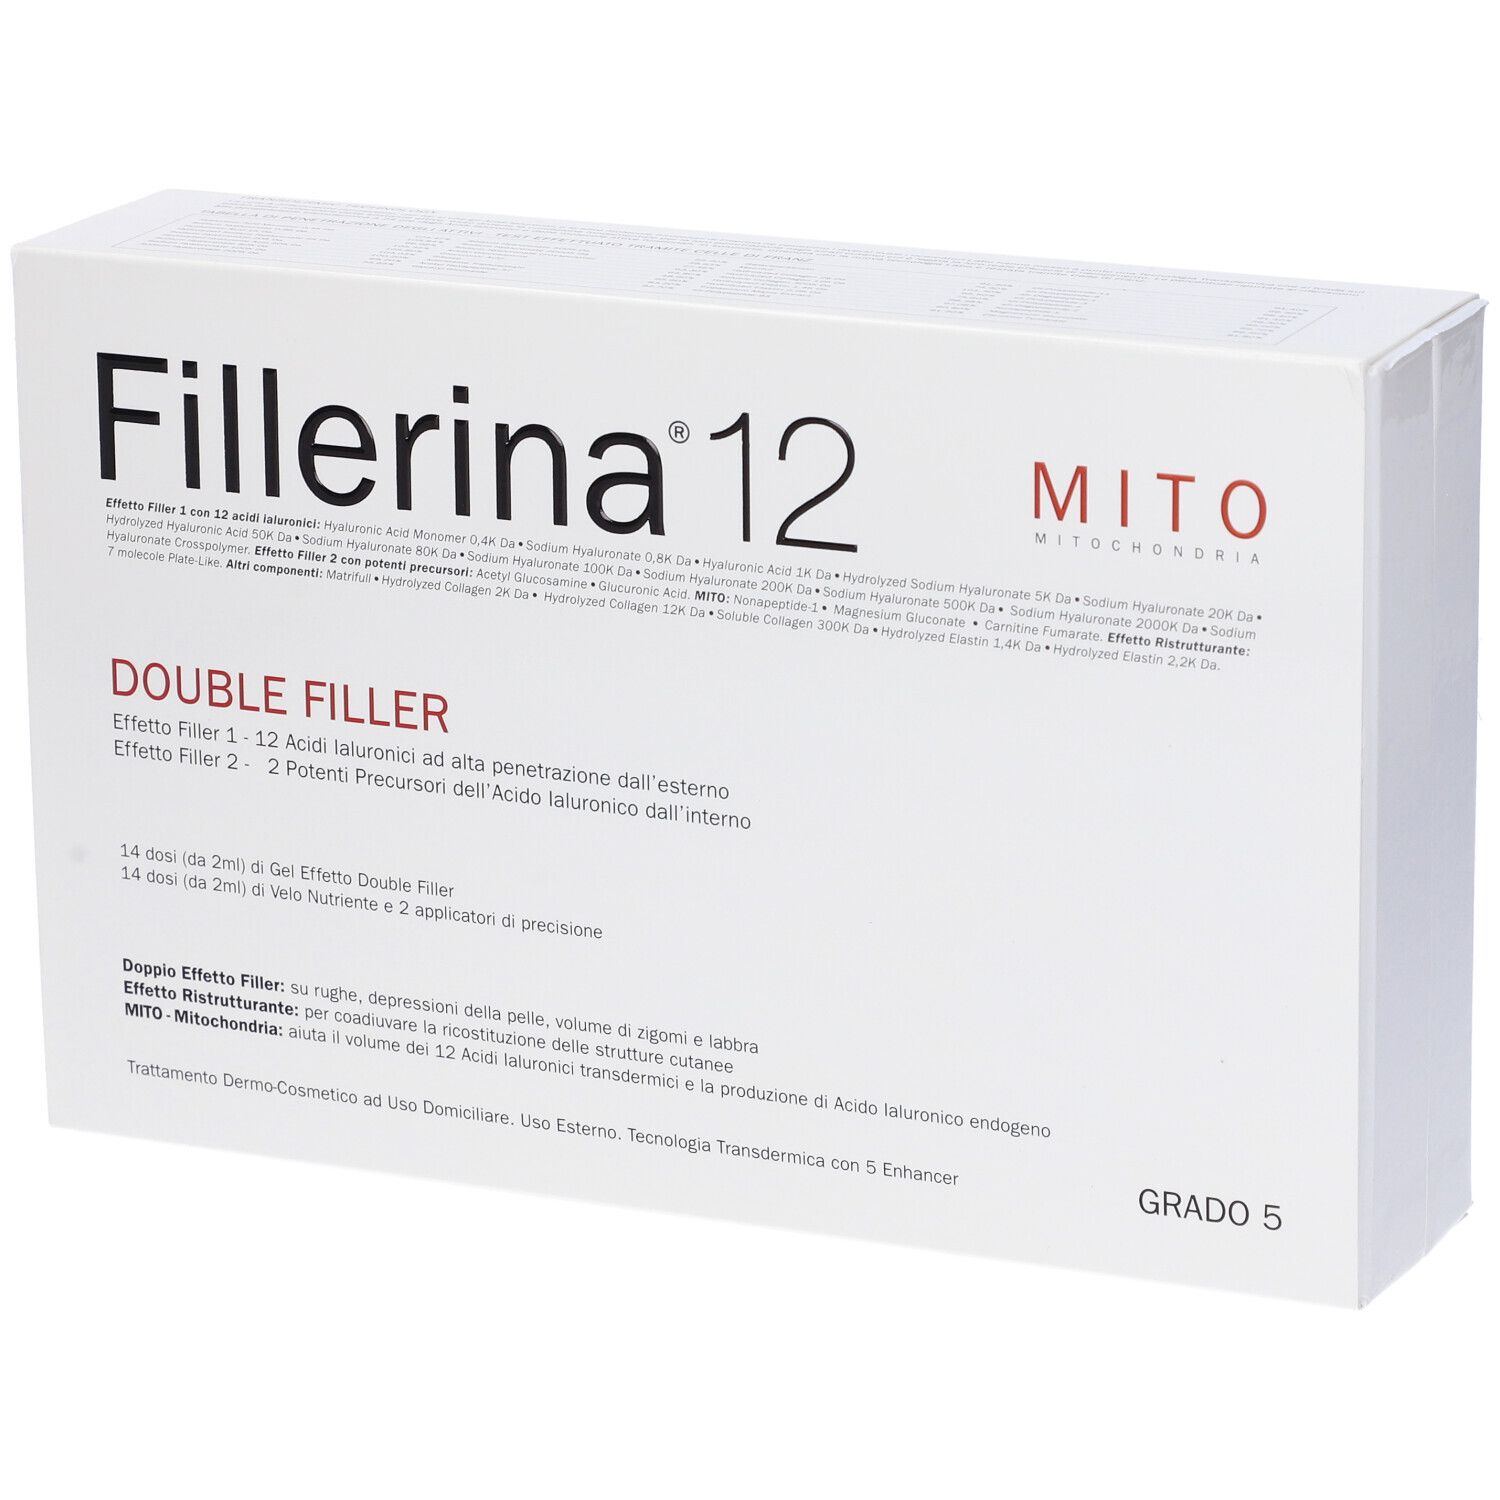 Image of Fillerina 12 Double Filler Mito Base Grado 5